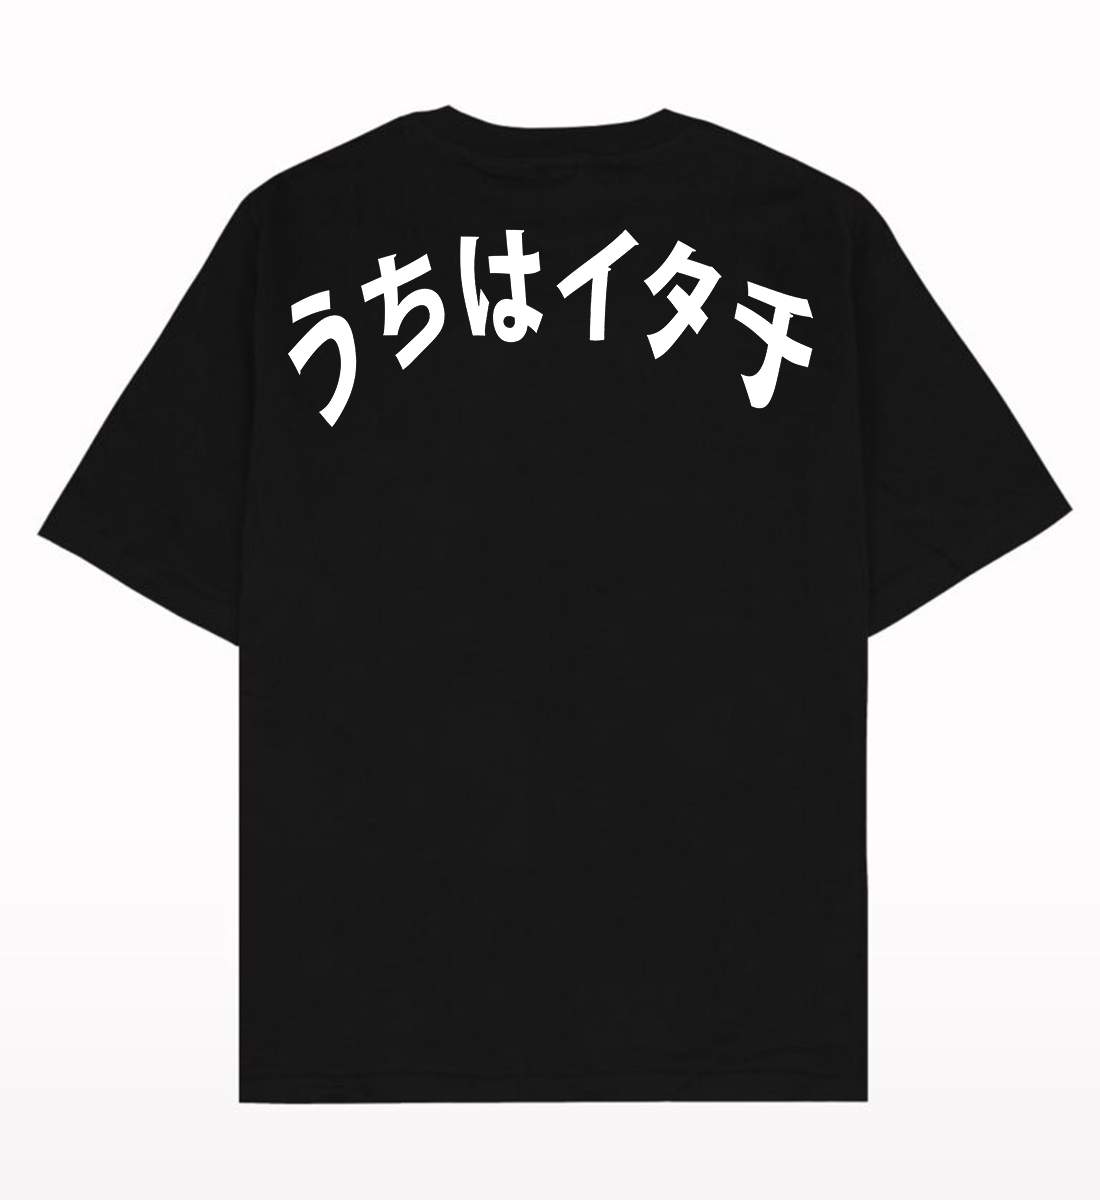 Itachi Power Anime Oversized T-Shirt